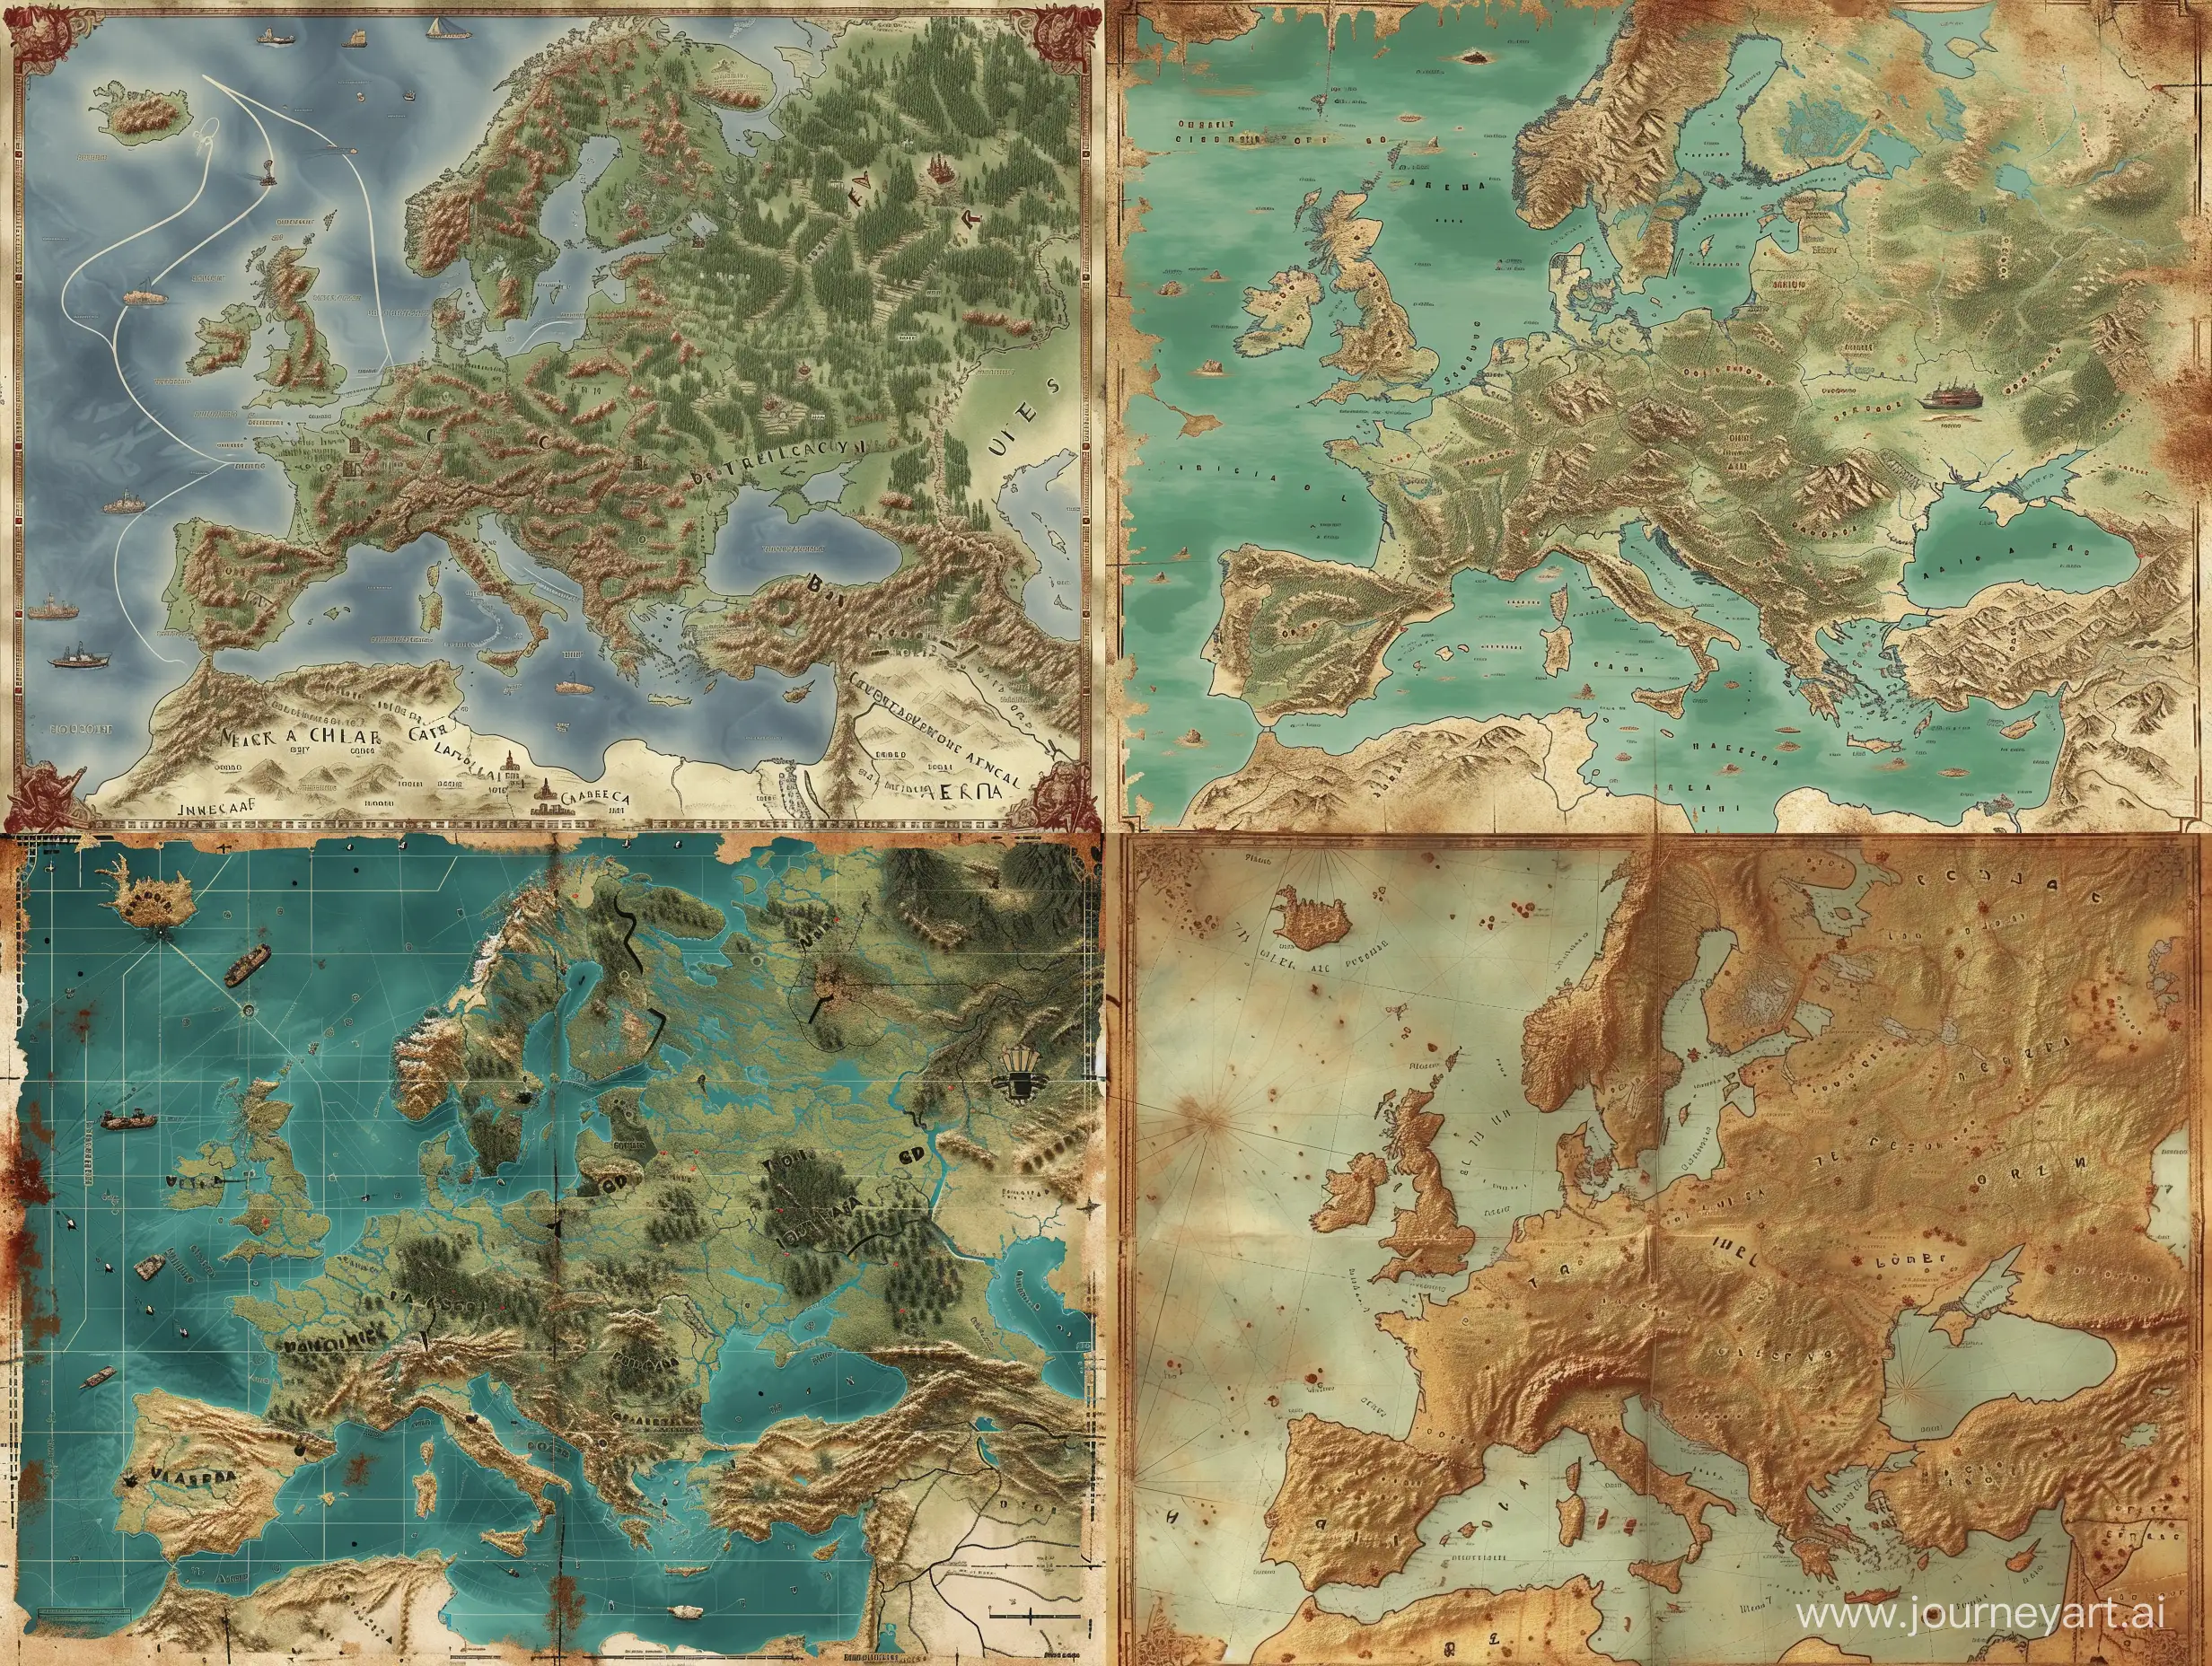 сгенирируй карту европы катороя сделана в стили пост опокалипса 